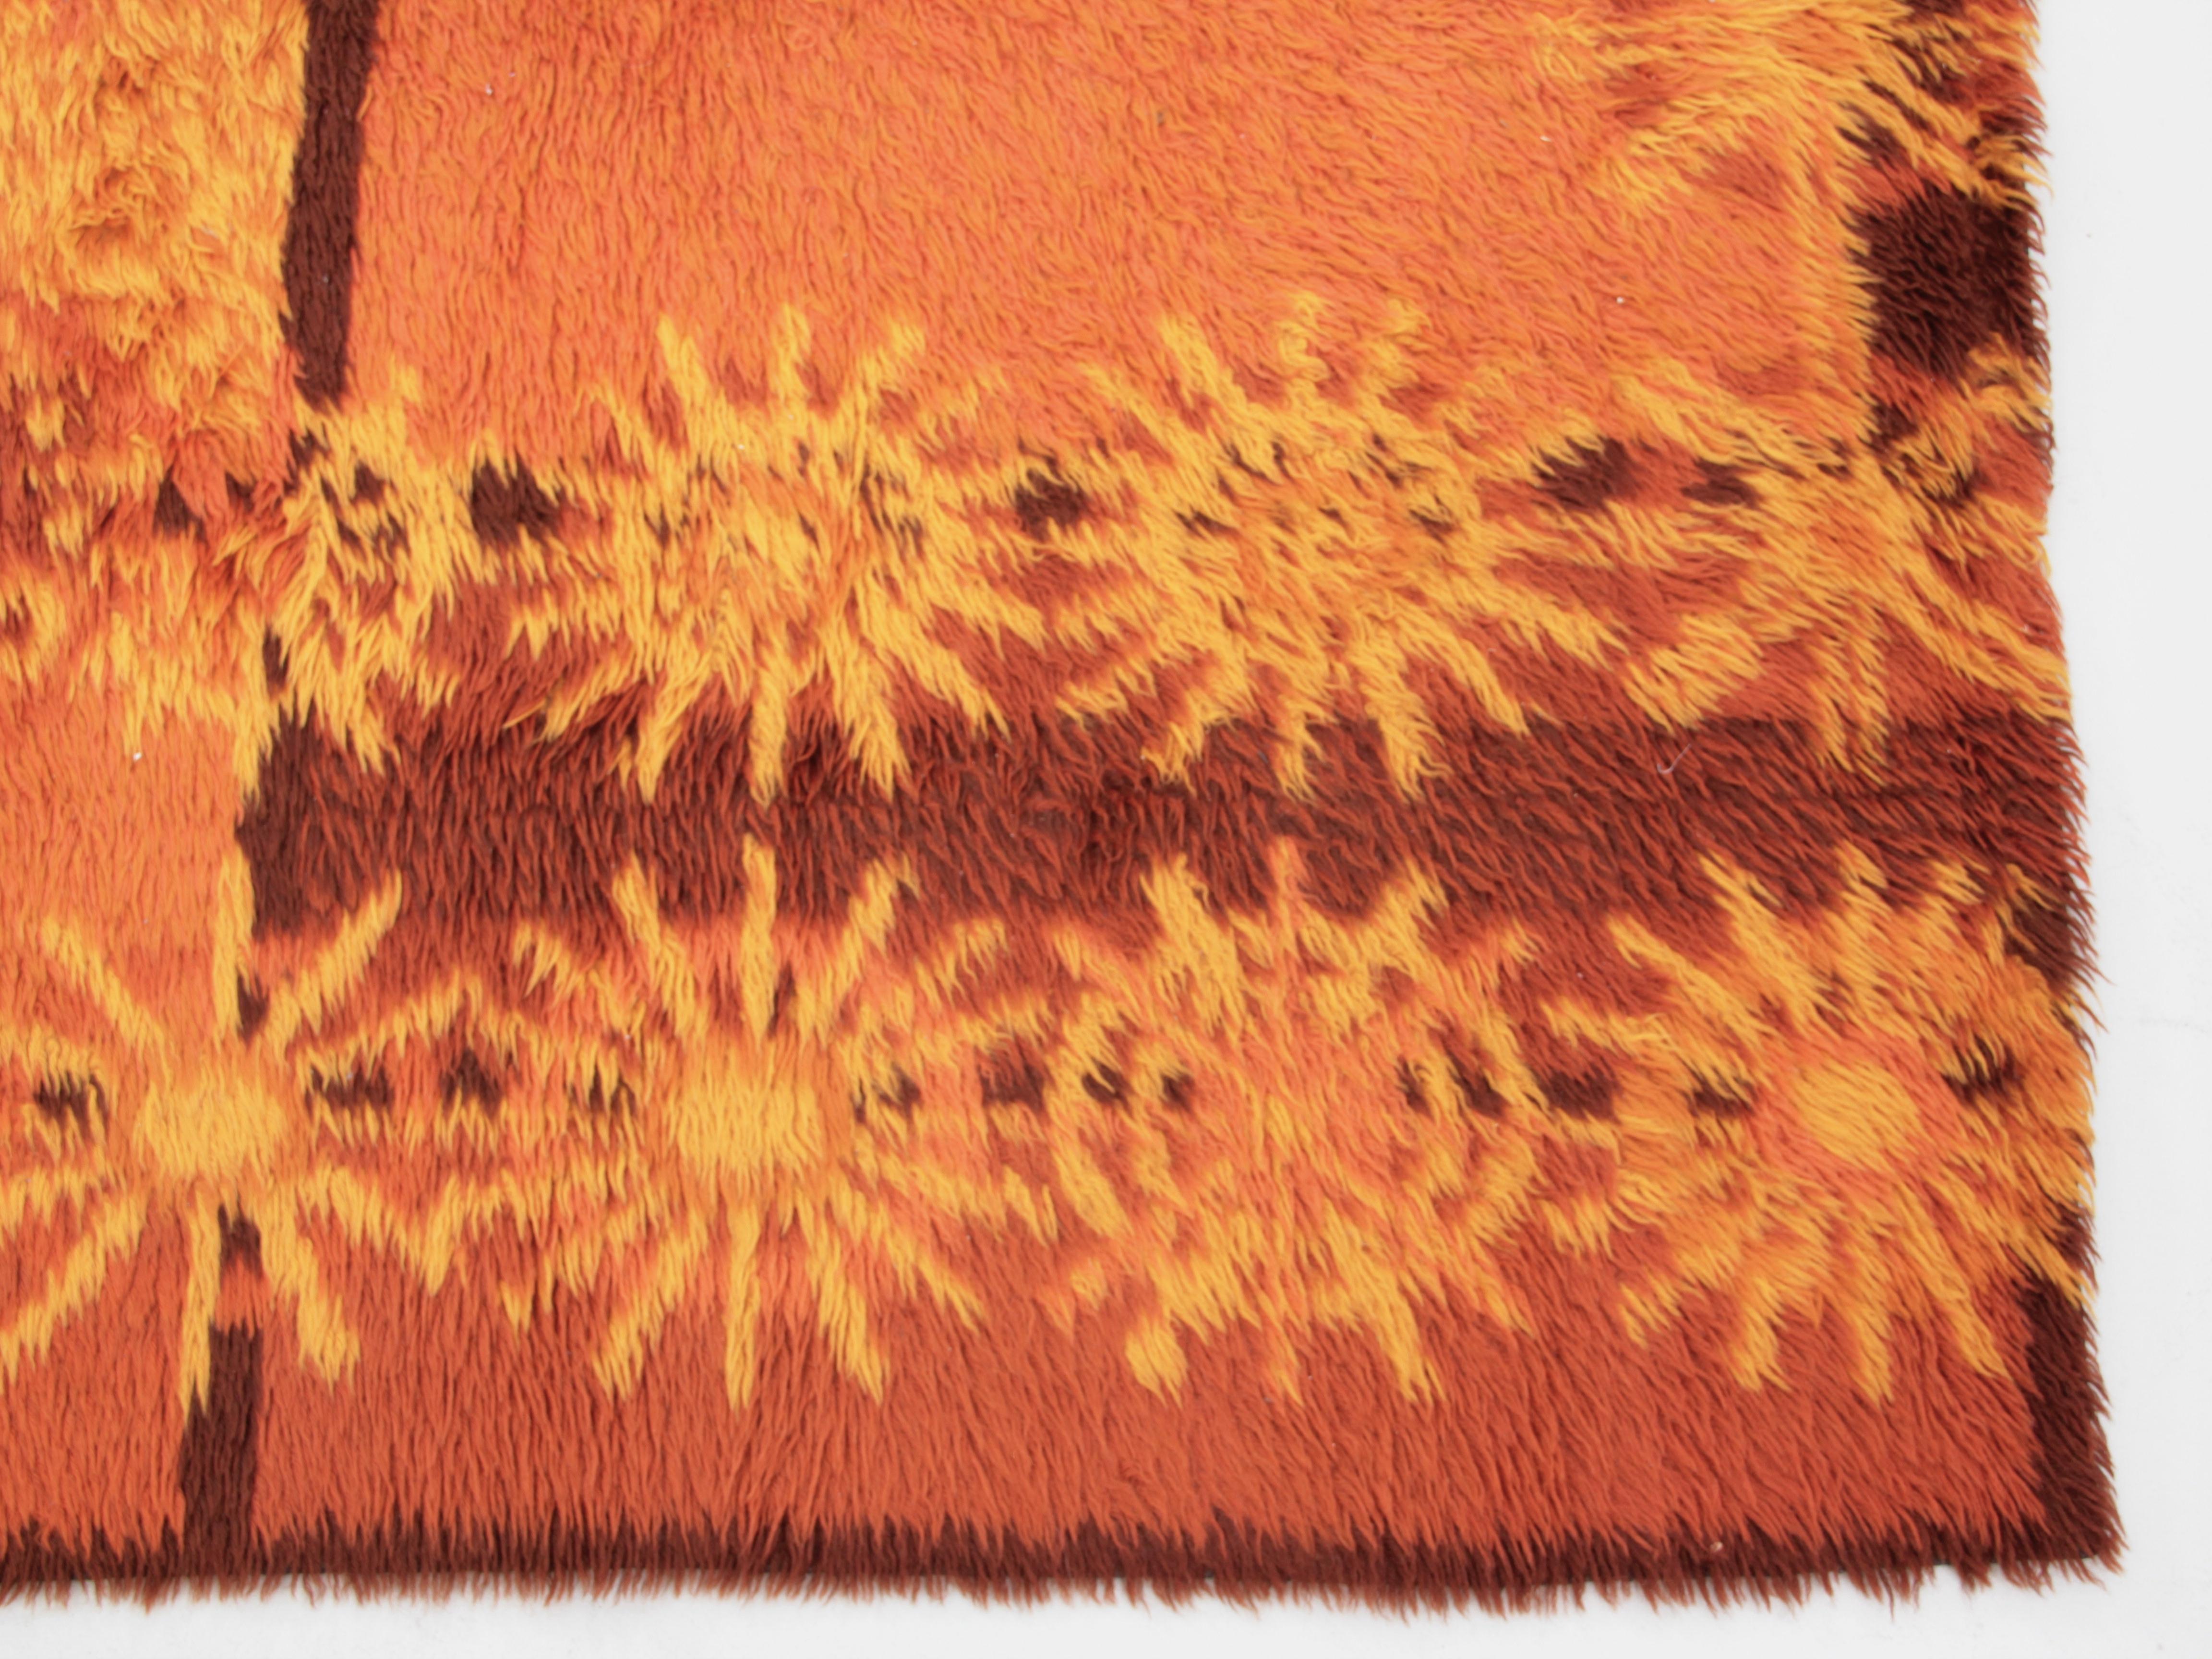 Rya-Teppiche aus Wolle mit gelben Motiven 200 x 156 cm

Ein Rya ist ein traditioneller schwedischer Teppich aus Schurwolle isländischer Schafe mit einer Länge von etwa 2-5 cm. Ursprünglich war die Rya eine große Decke, die von Seeleuten als Ersatz